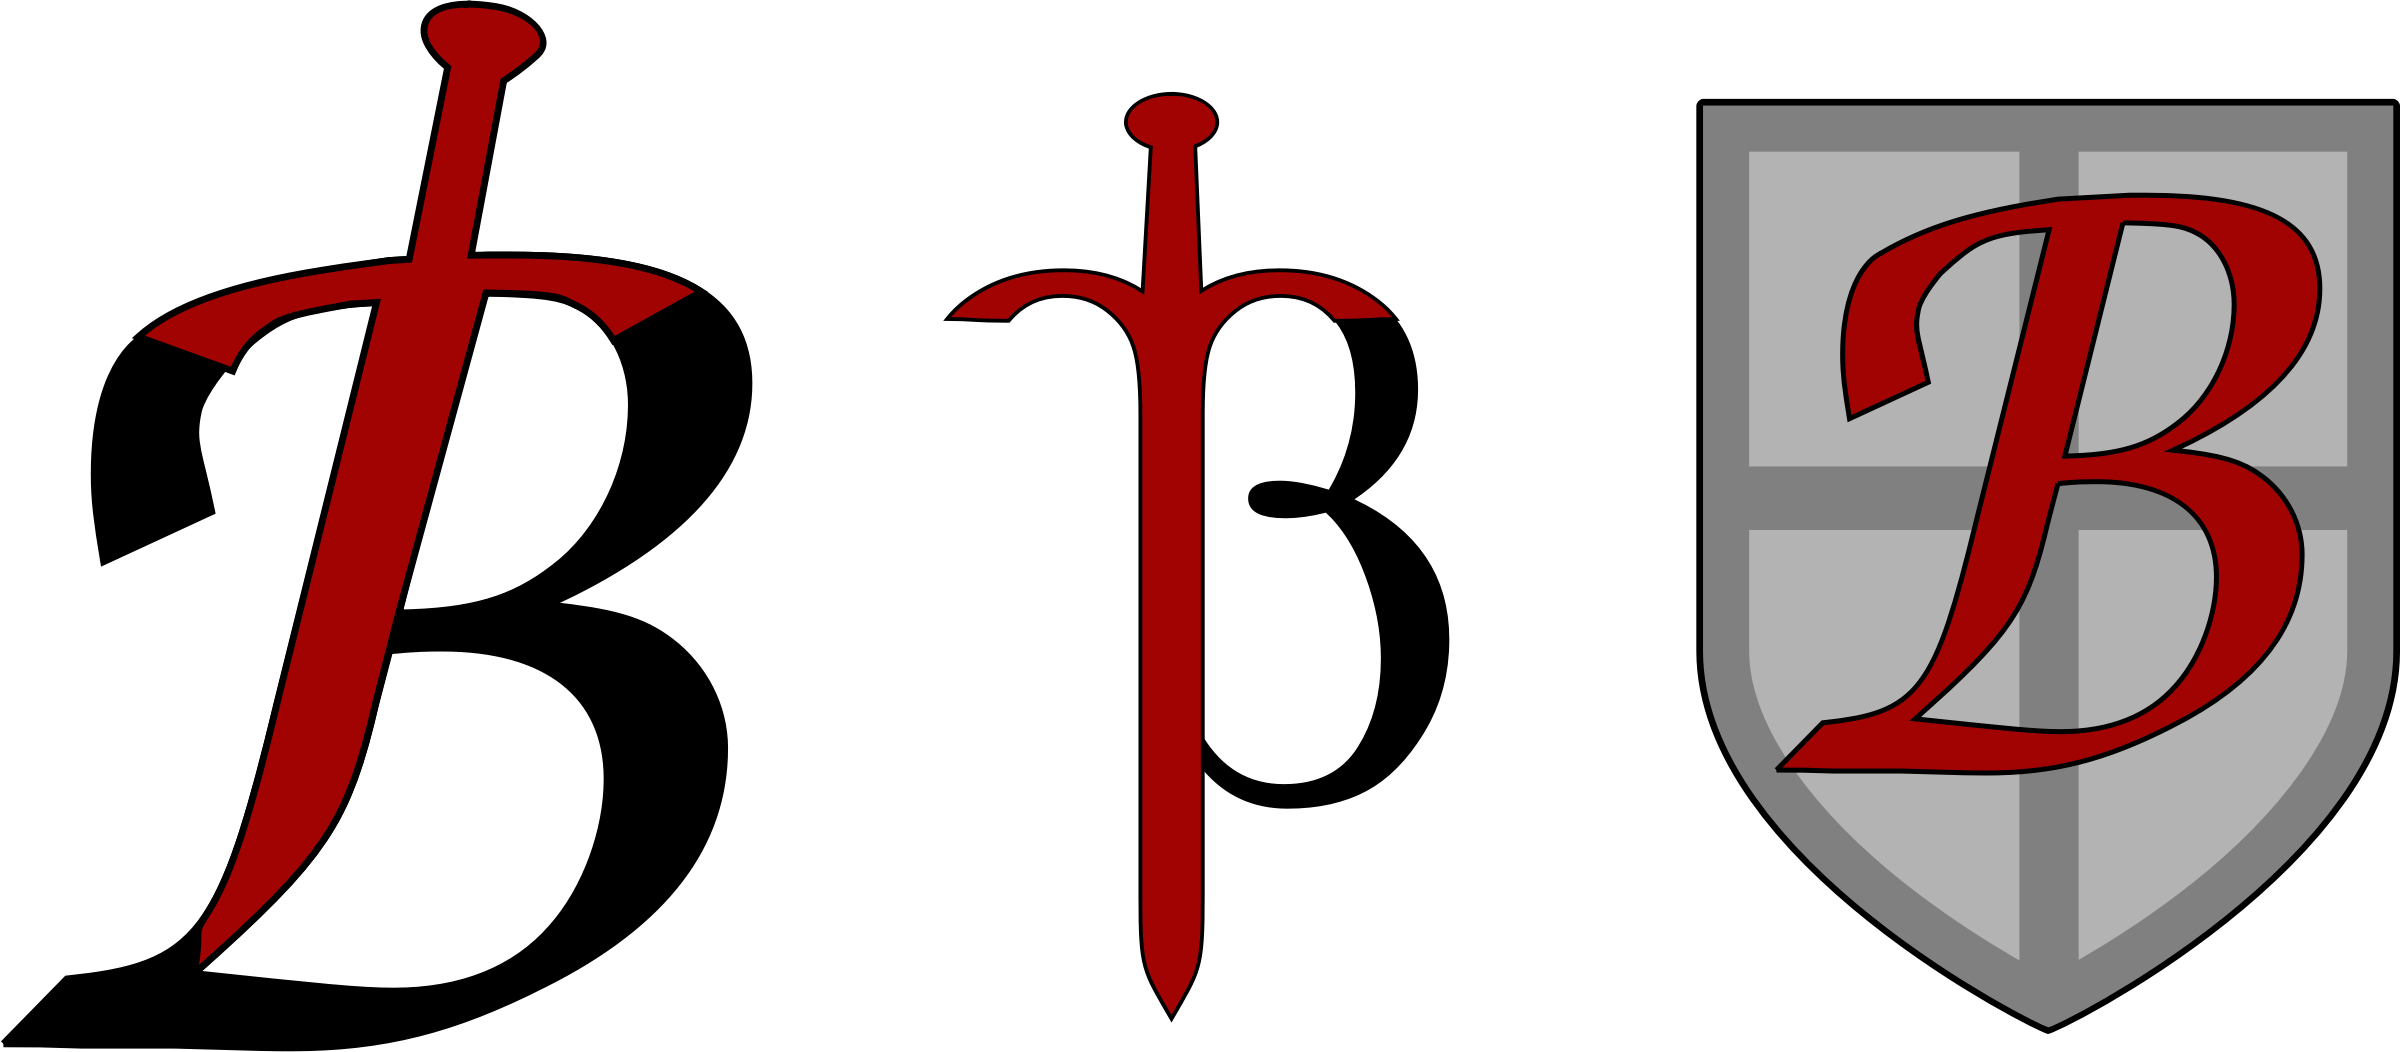 Big B Logo - Clipart - B Logos